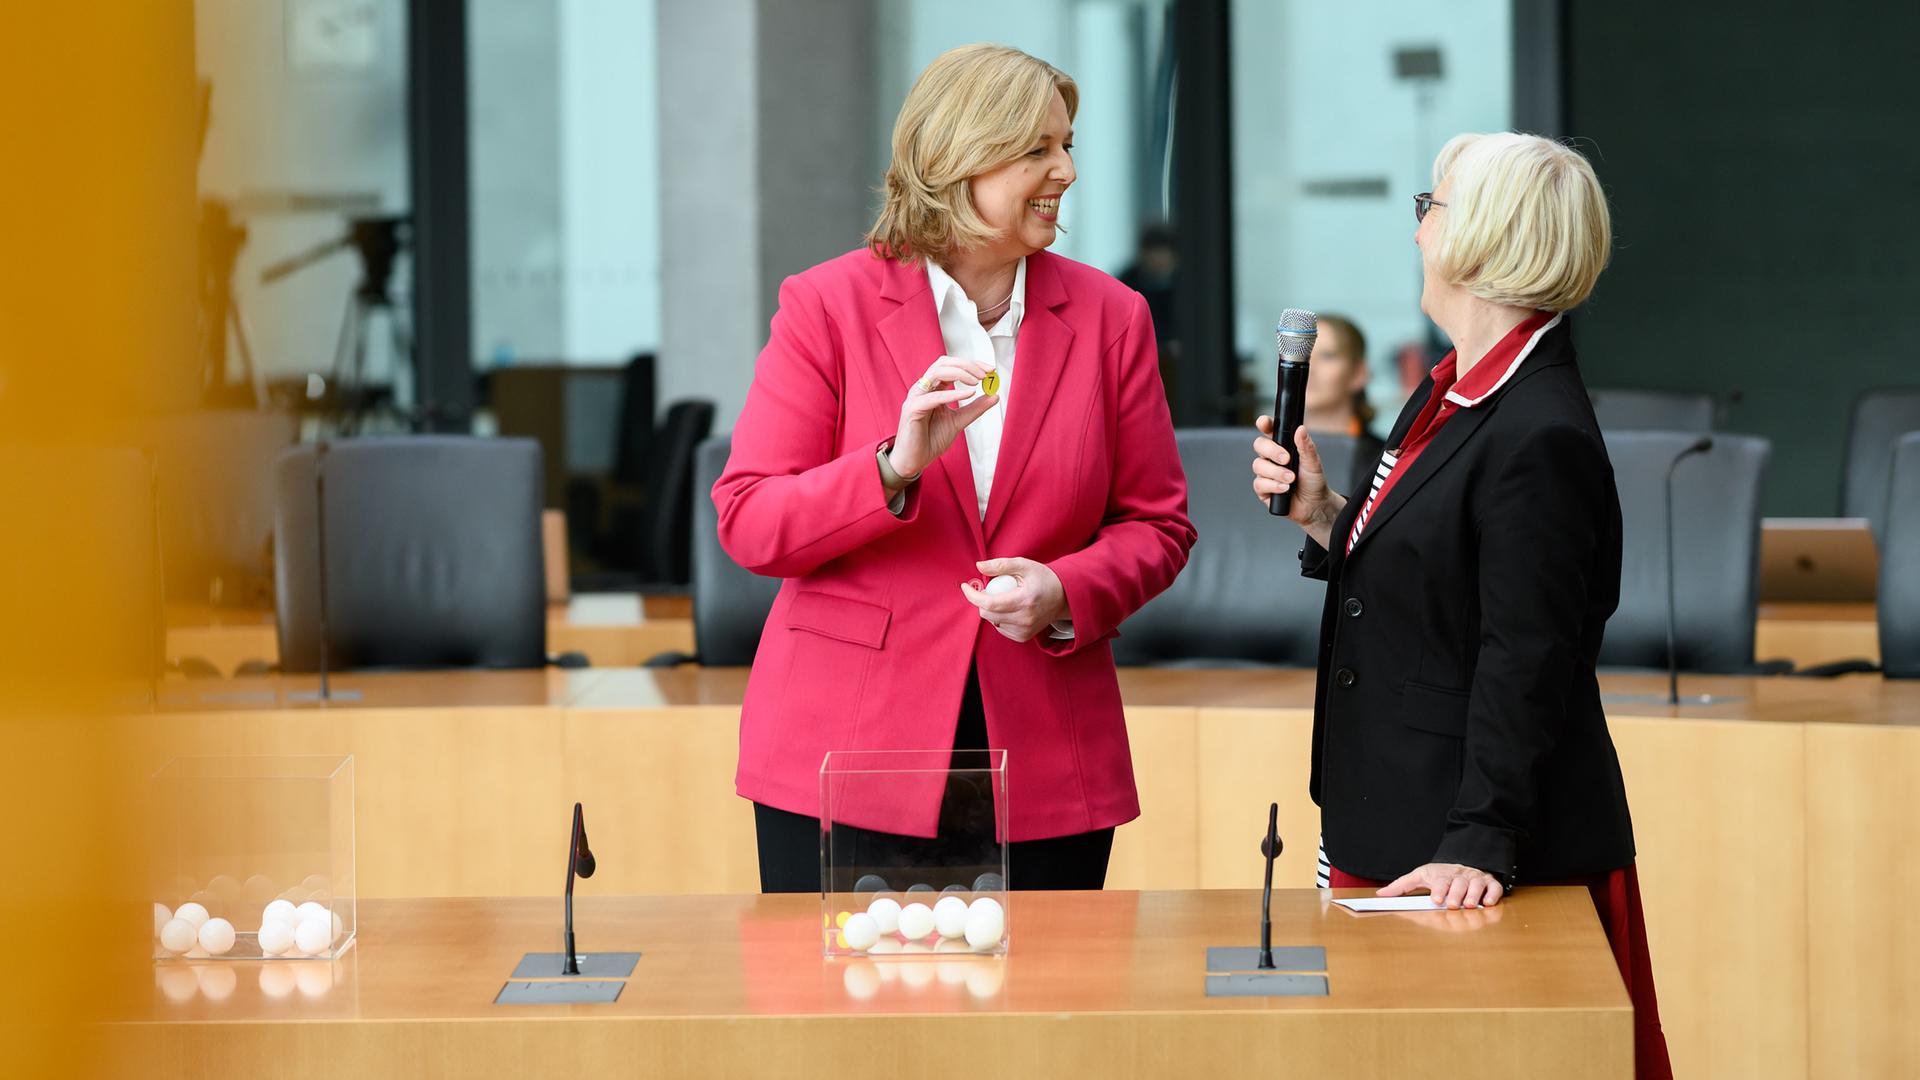 Bundestagspräsidentin Bärbel Bas steht vor einem Gefäß mit weißen Nummern und zieht daraus.